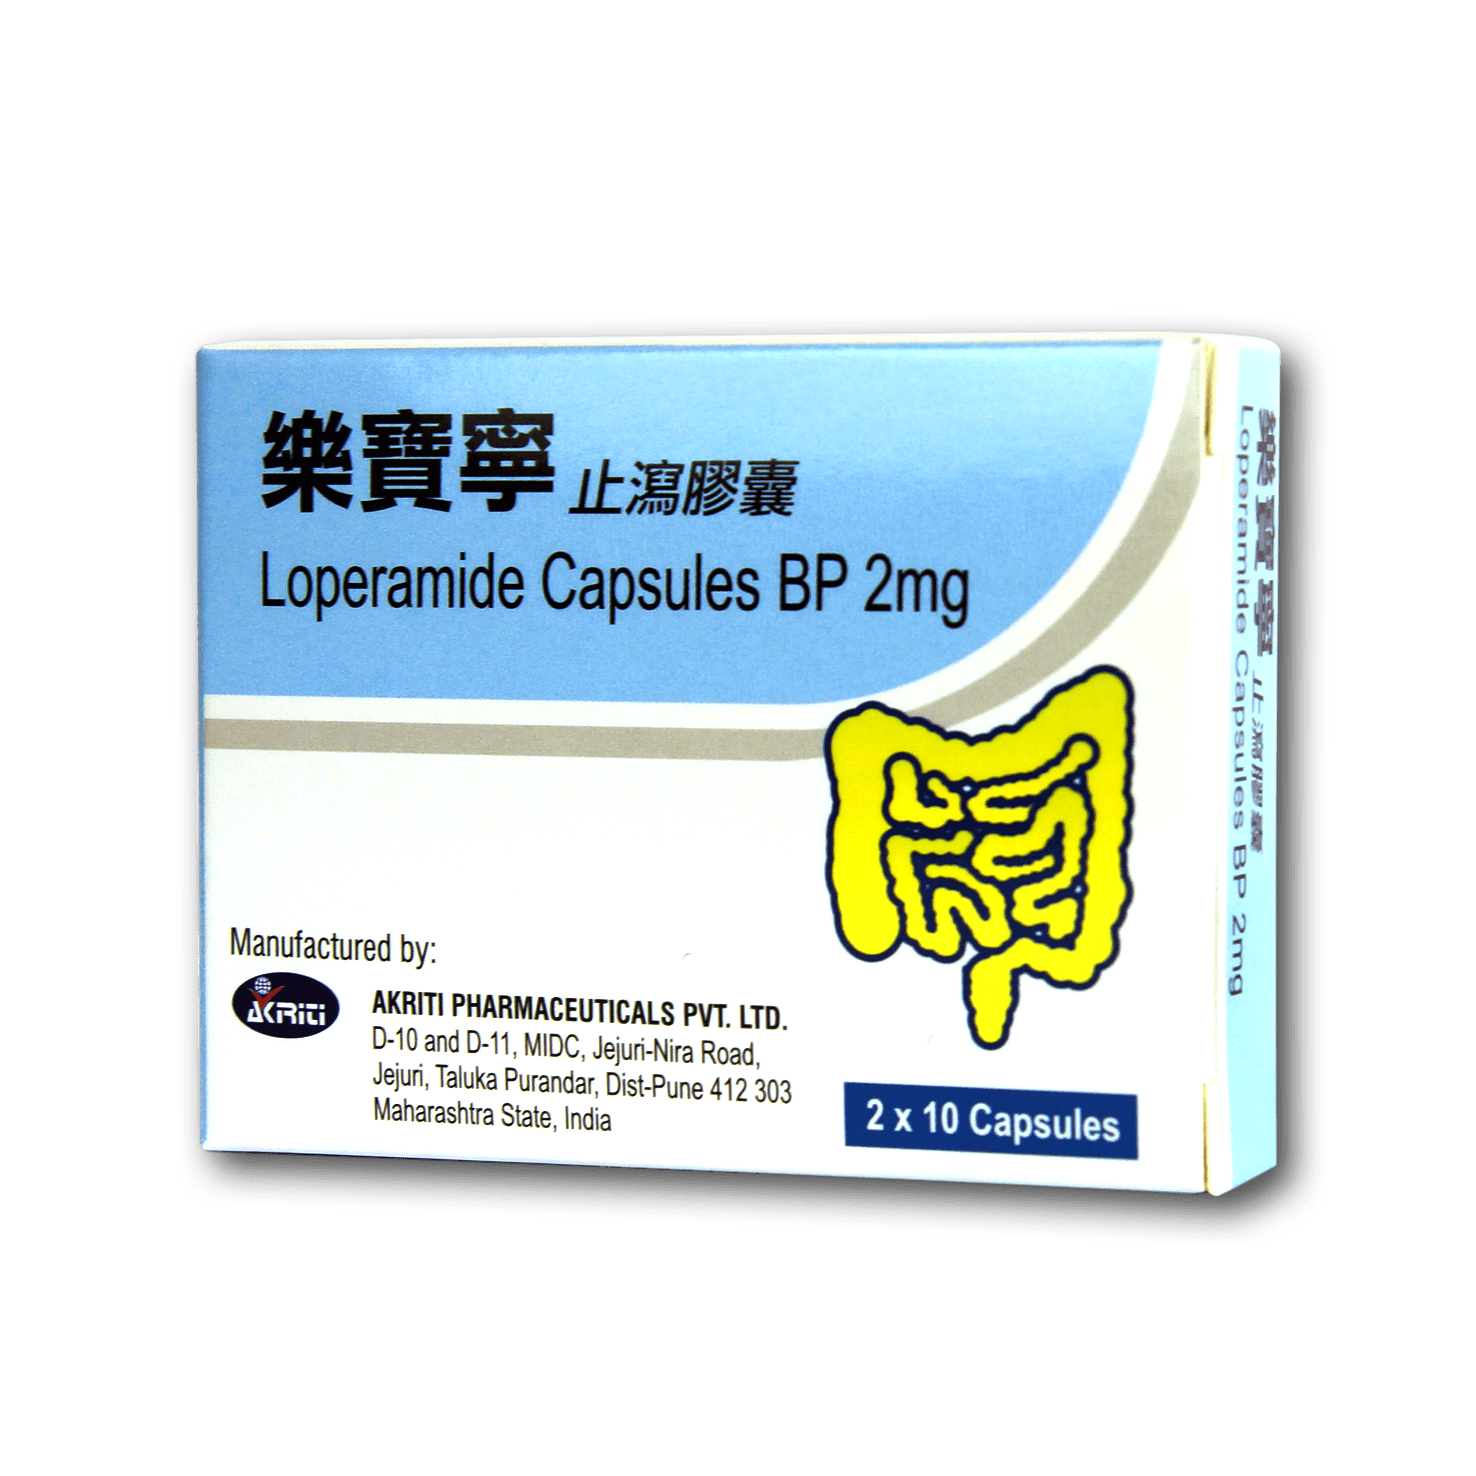 樂寶寧止瀉膠囊 Loperamide Capsule BP 2mg 2x10's B/P (ALU PVC blister)